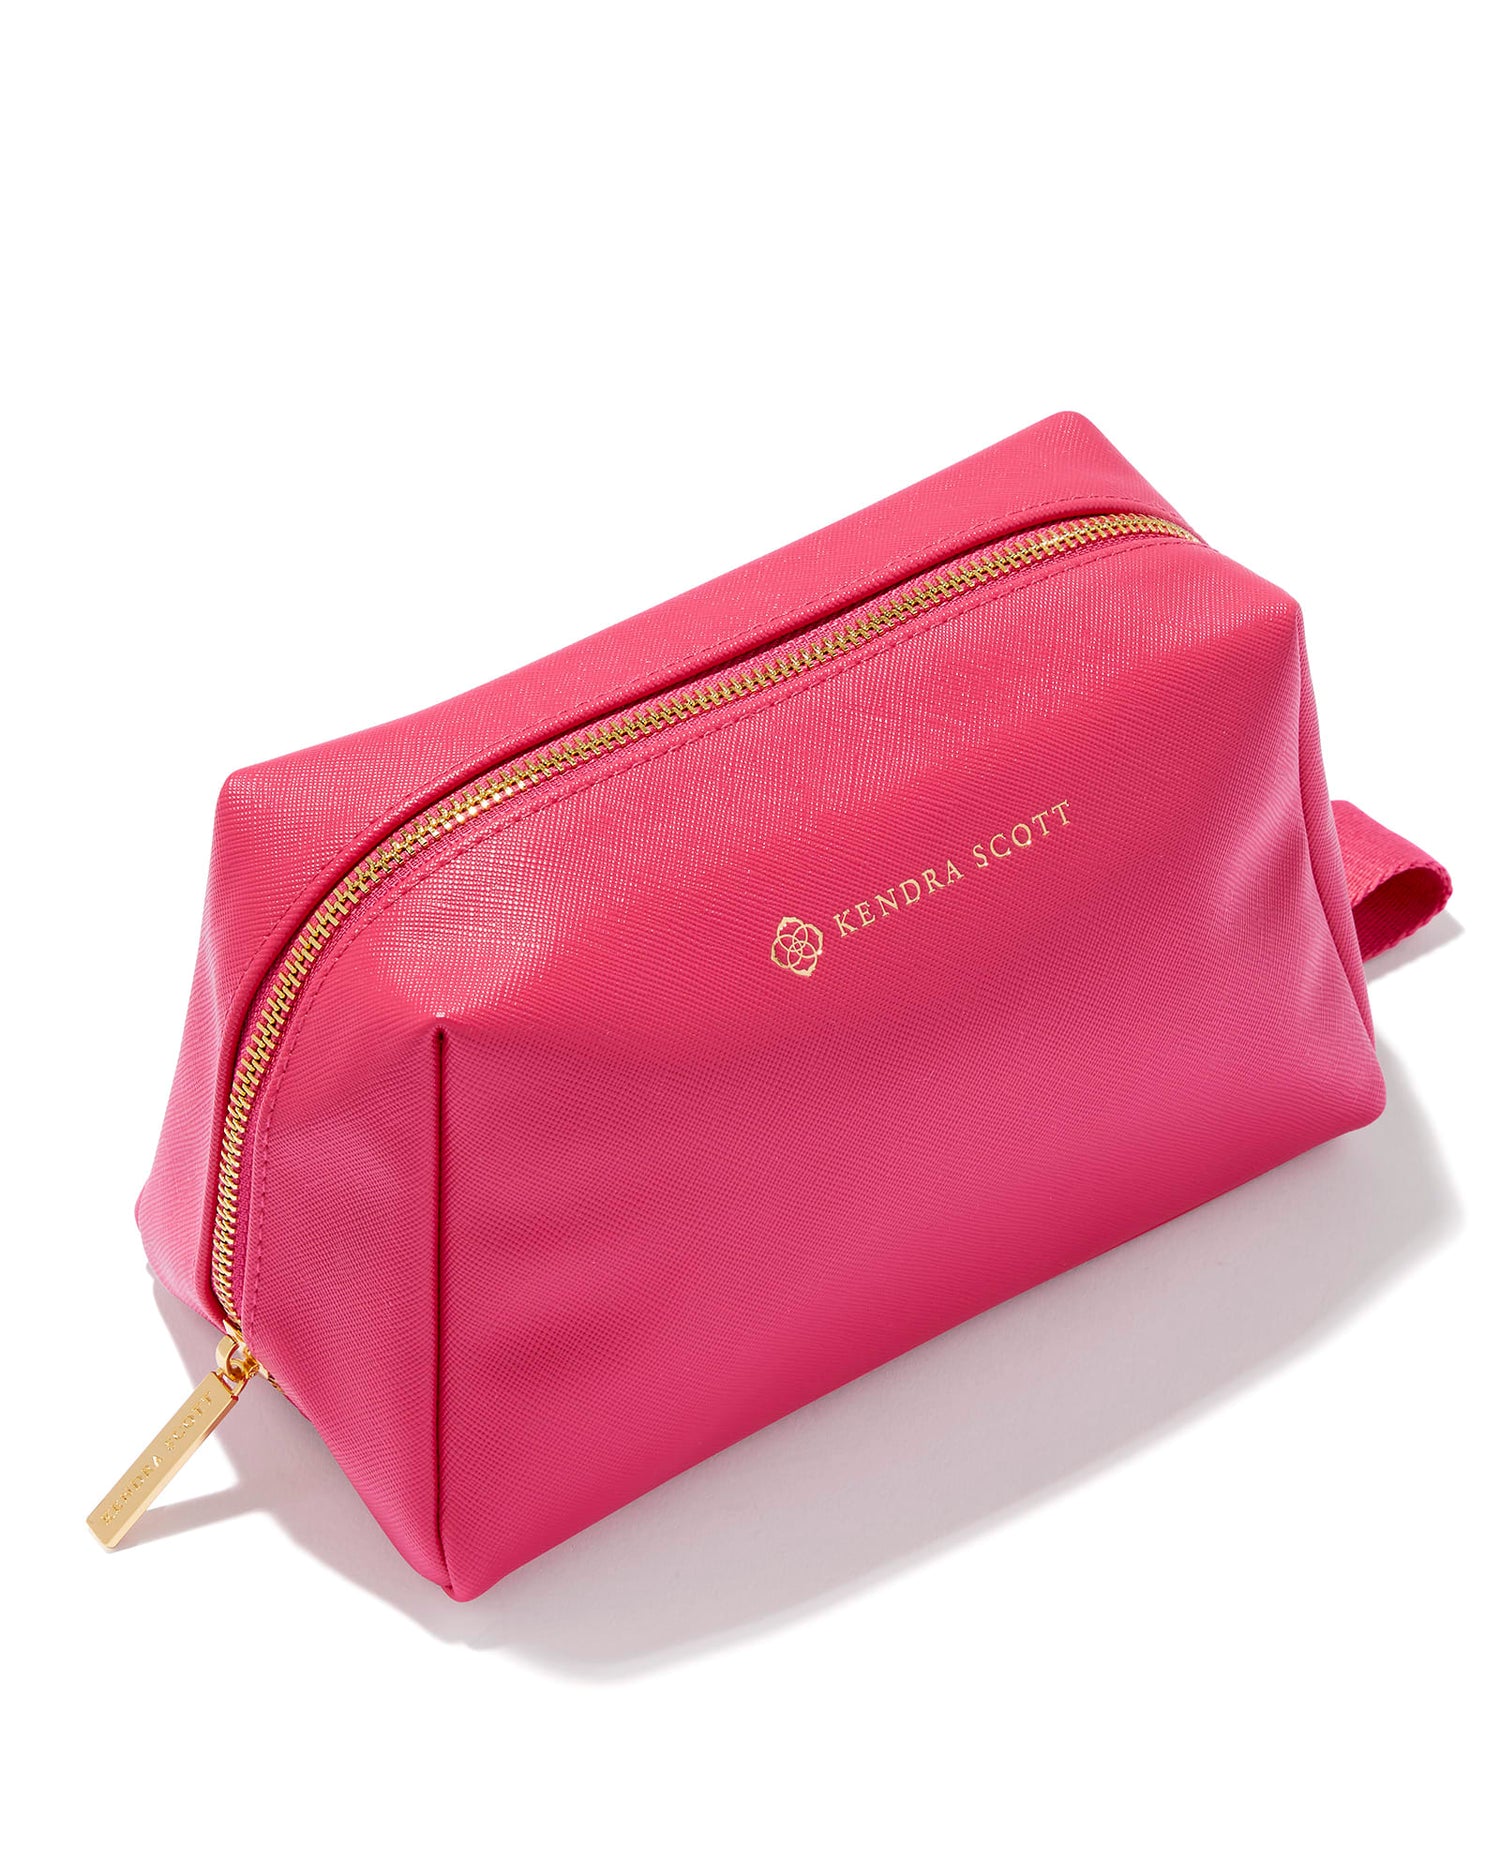 hot pink cosmetic zip case gold zipper and kendra scott label 8.3" (L) X 4.3" (W) X 49" (H)